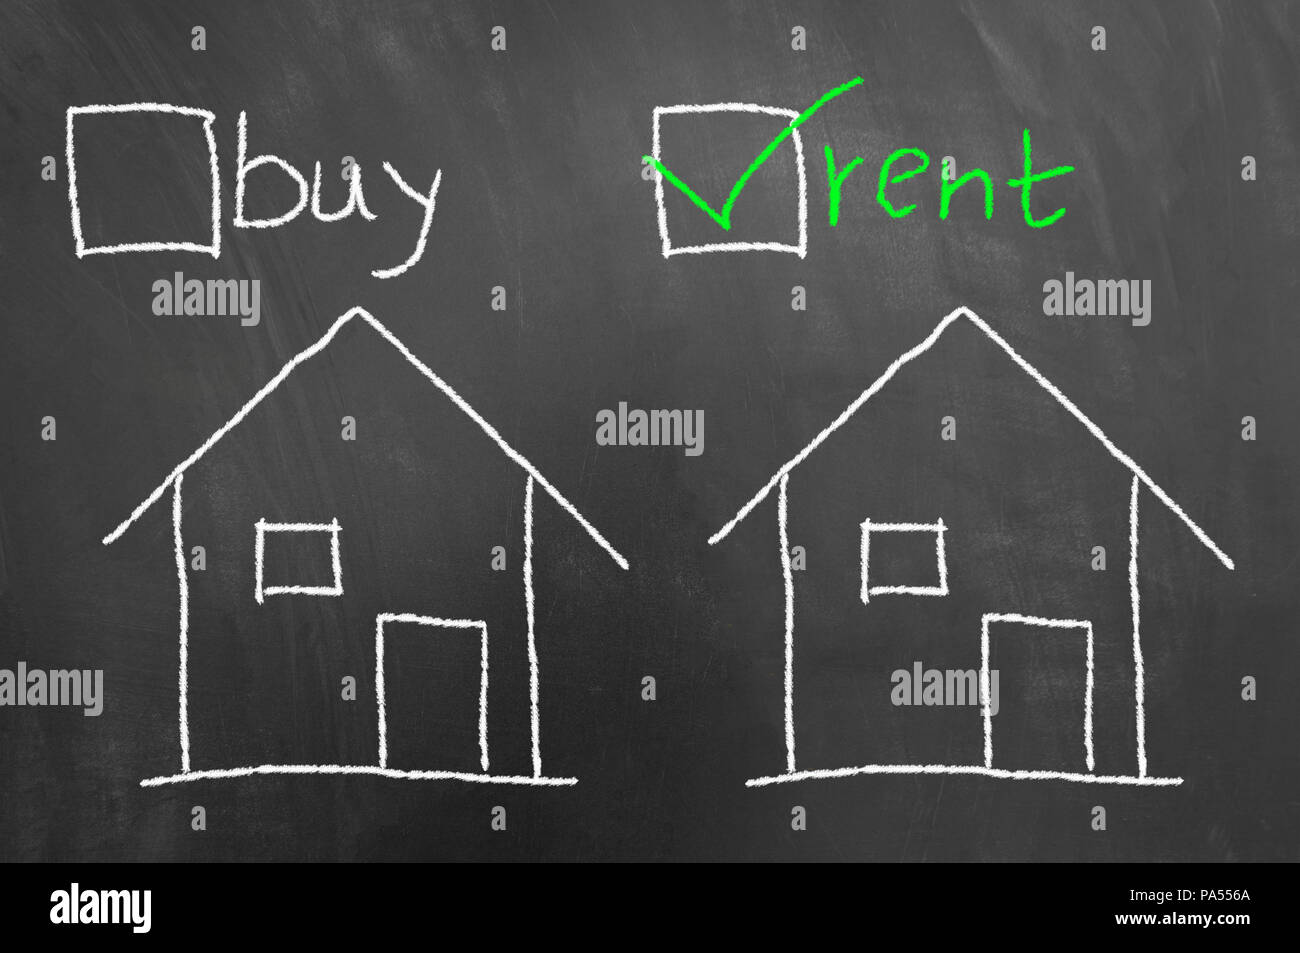 Comprar Alquilar casa dibujo de tiza en la pizarra o pizarra con casilla de  verificación como negocio inmobiliario concepto de elección de vivienda  Fotografía de stock - Alamy